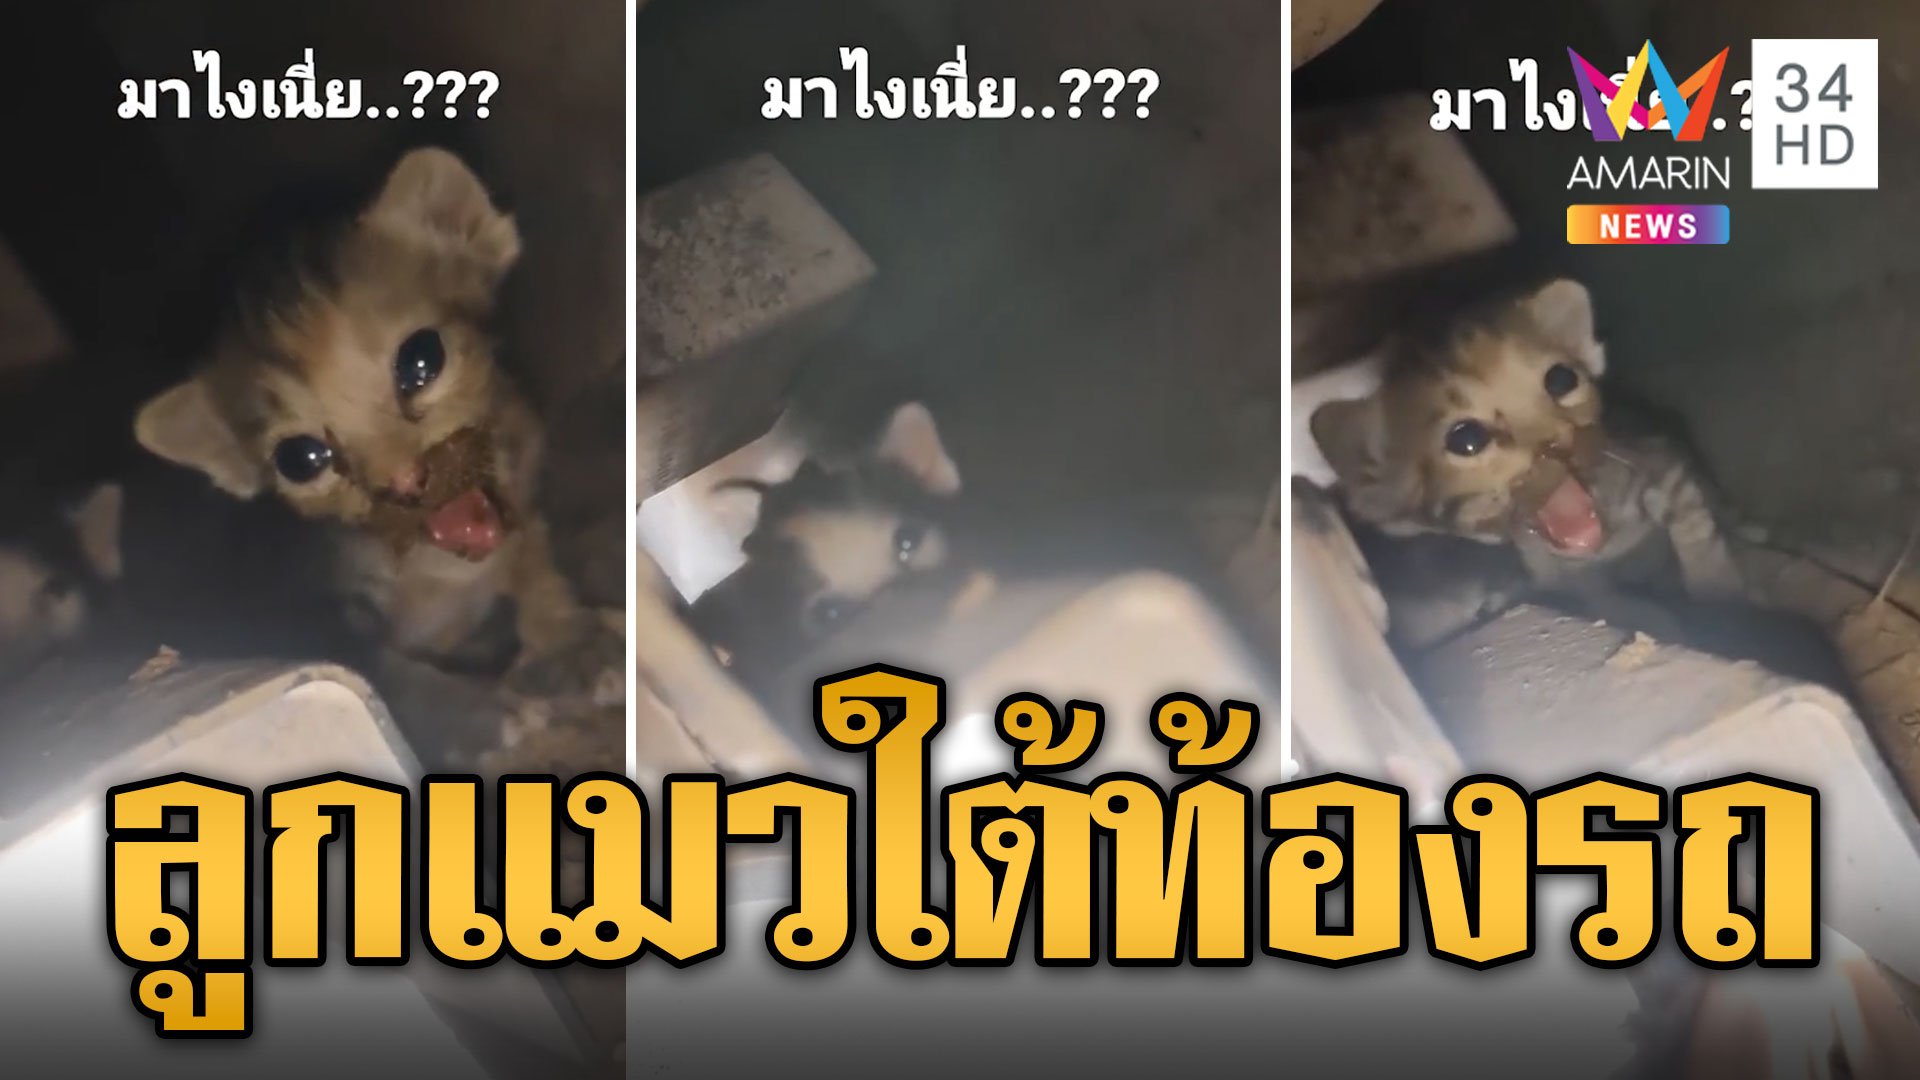 เชื่อมาให้โชค! แม่แมวคลอดลูกใต้ท้องรถ แห่ส่องเลขทะเบียน | ข่าวอรุณอมรินทร์ | 18 พ.ค. 67 | AMARIN TVHD34